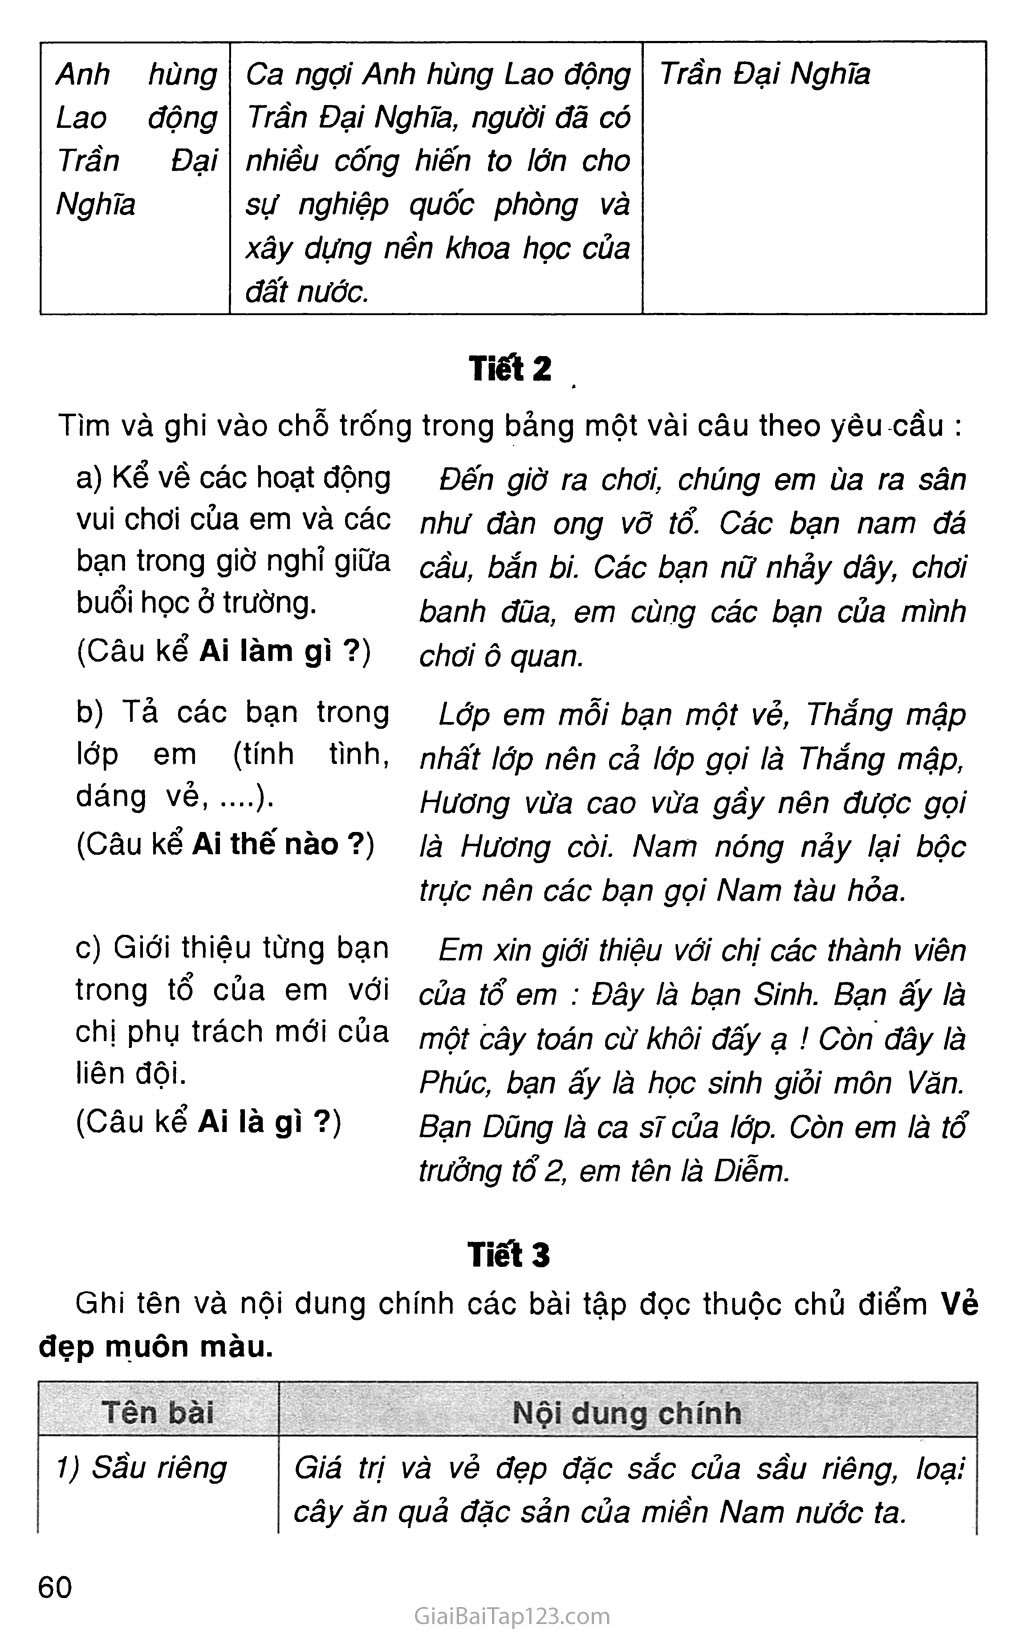 Vở bài tập Tiếng Việt lớp 4 Tập 2 trang 68, 69